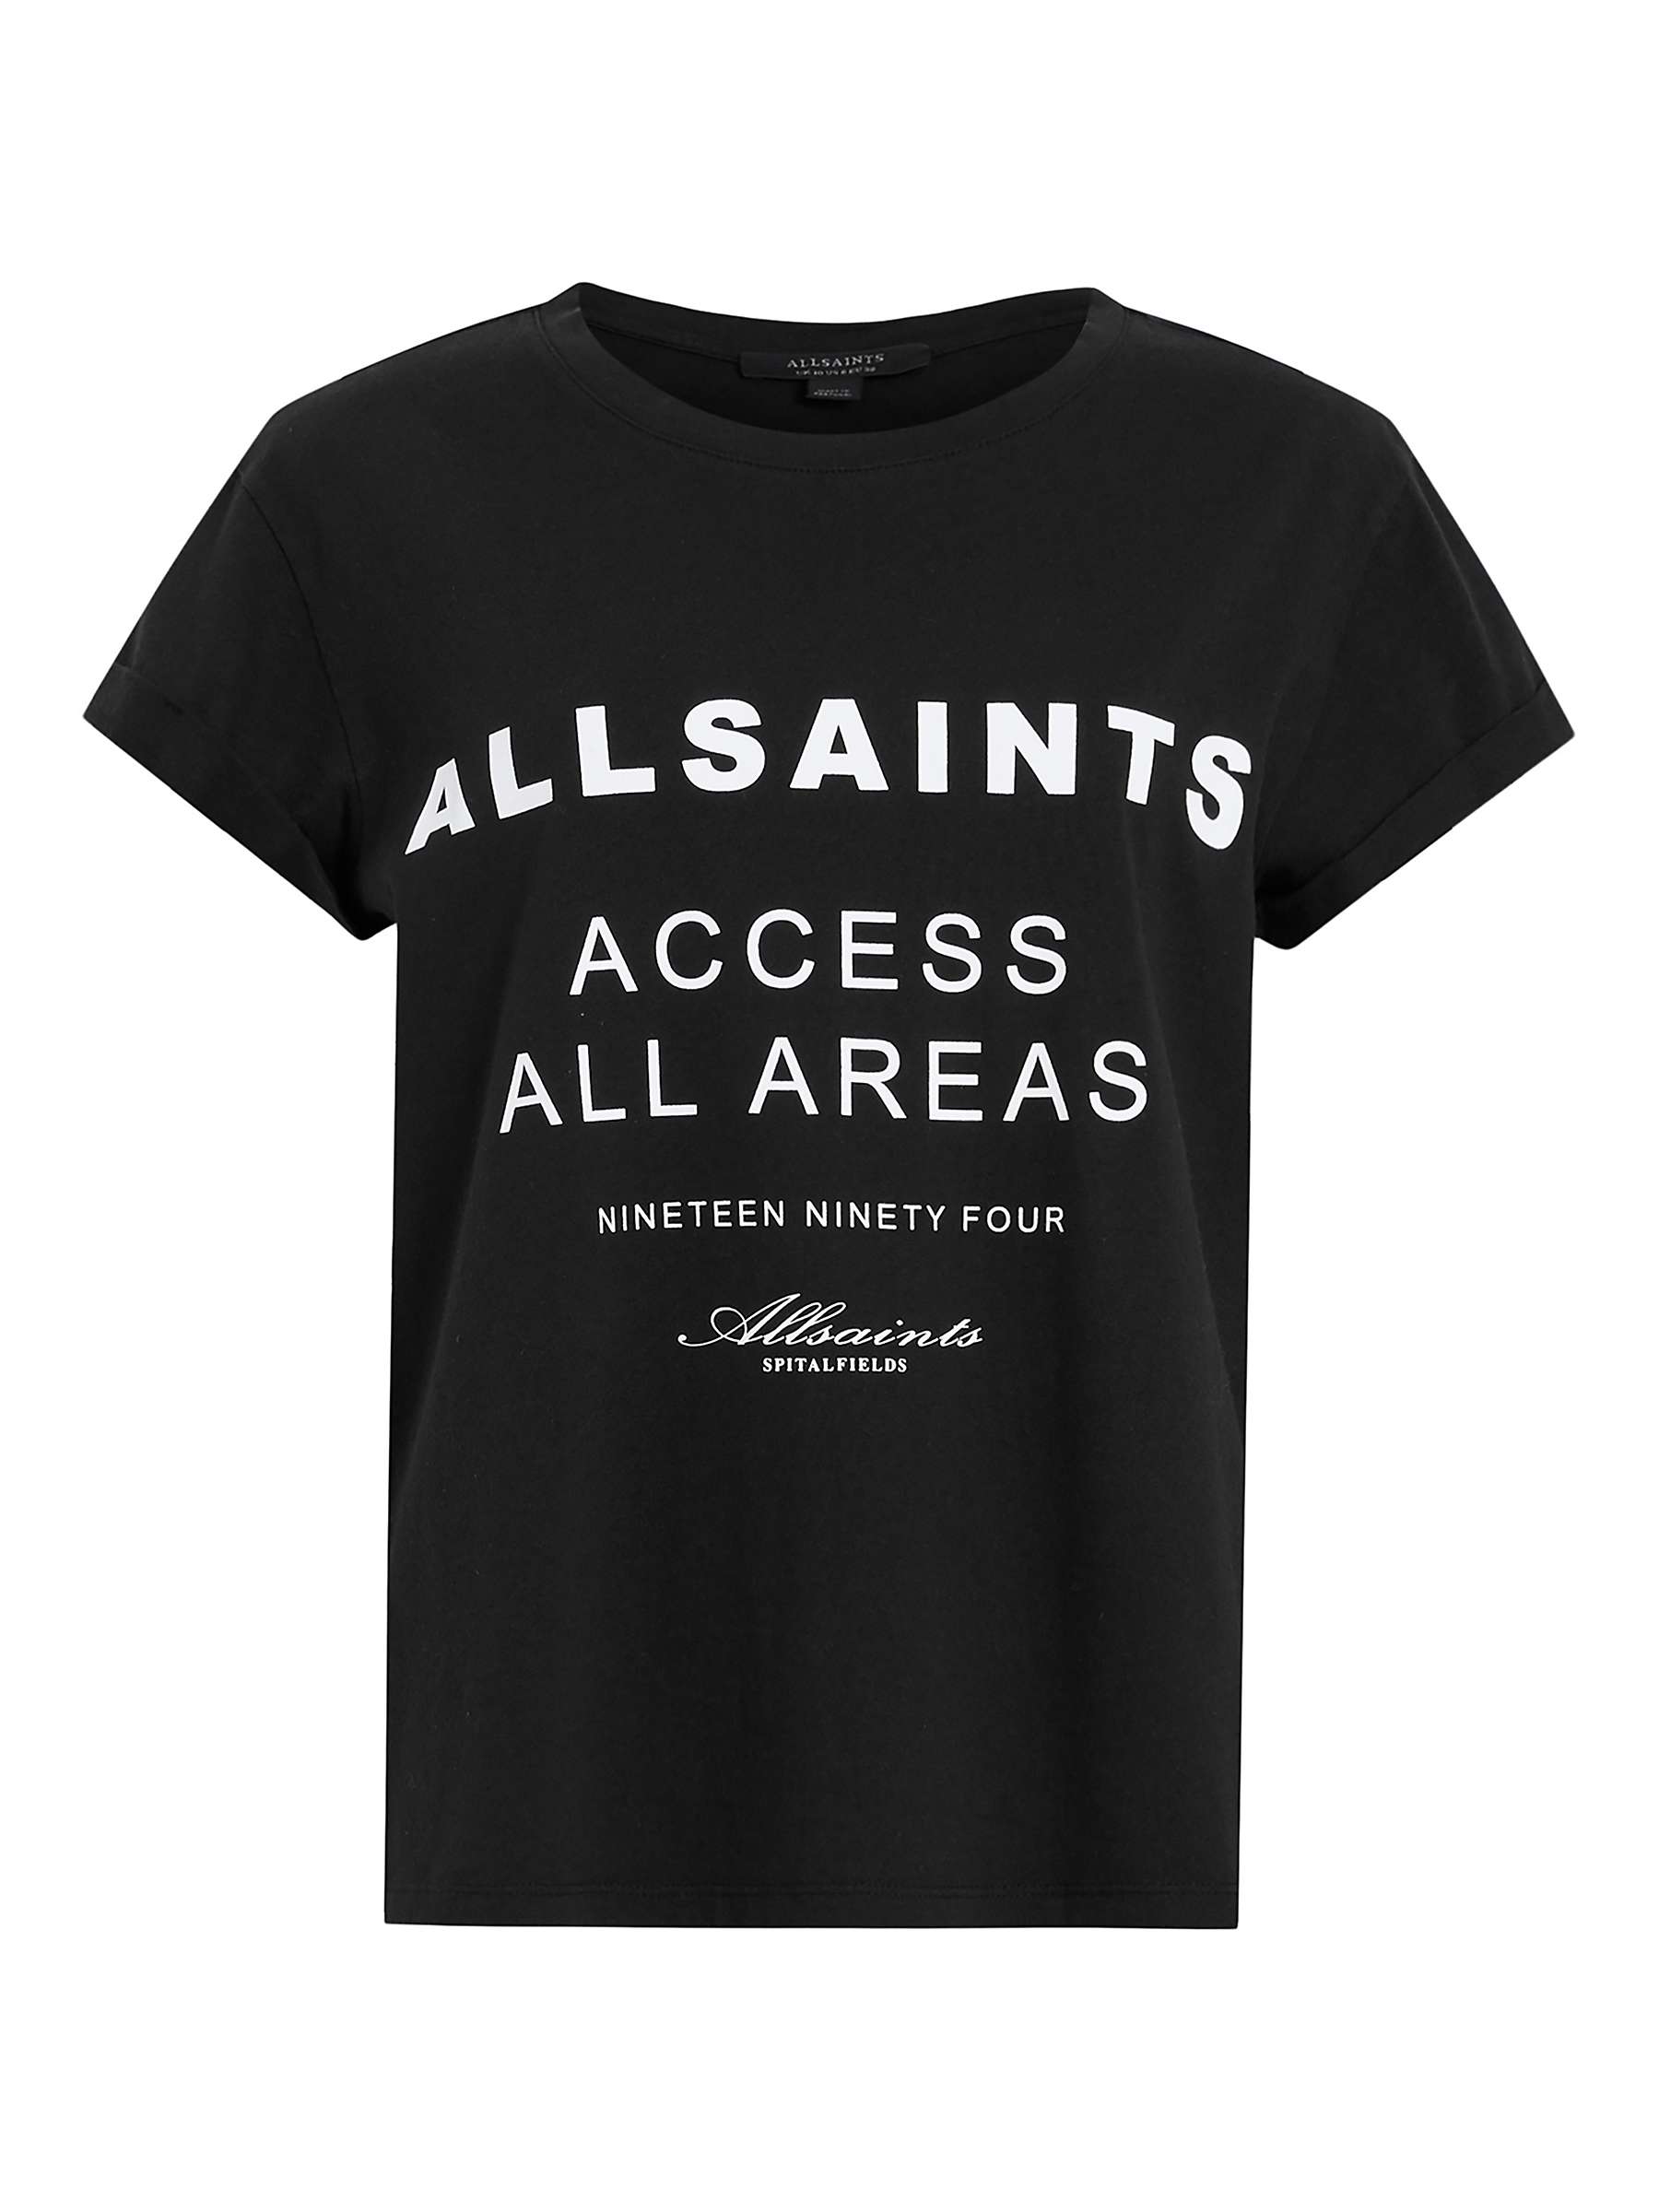 Buy AllSaints Tour Anna Organic Cotton T-shirt, Black Online at johnlewis.com